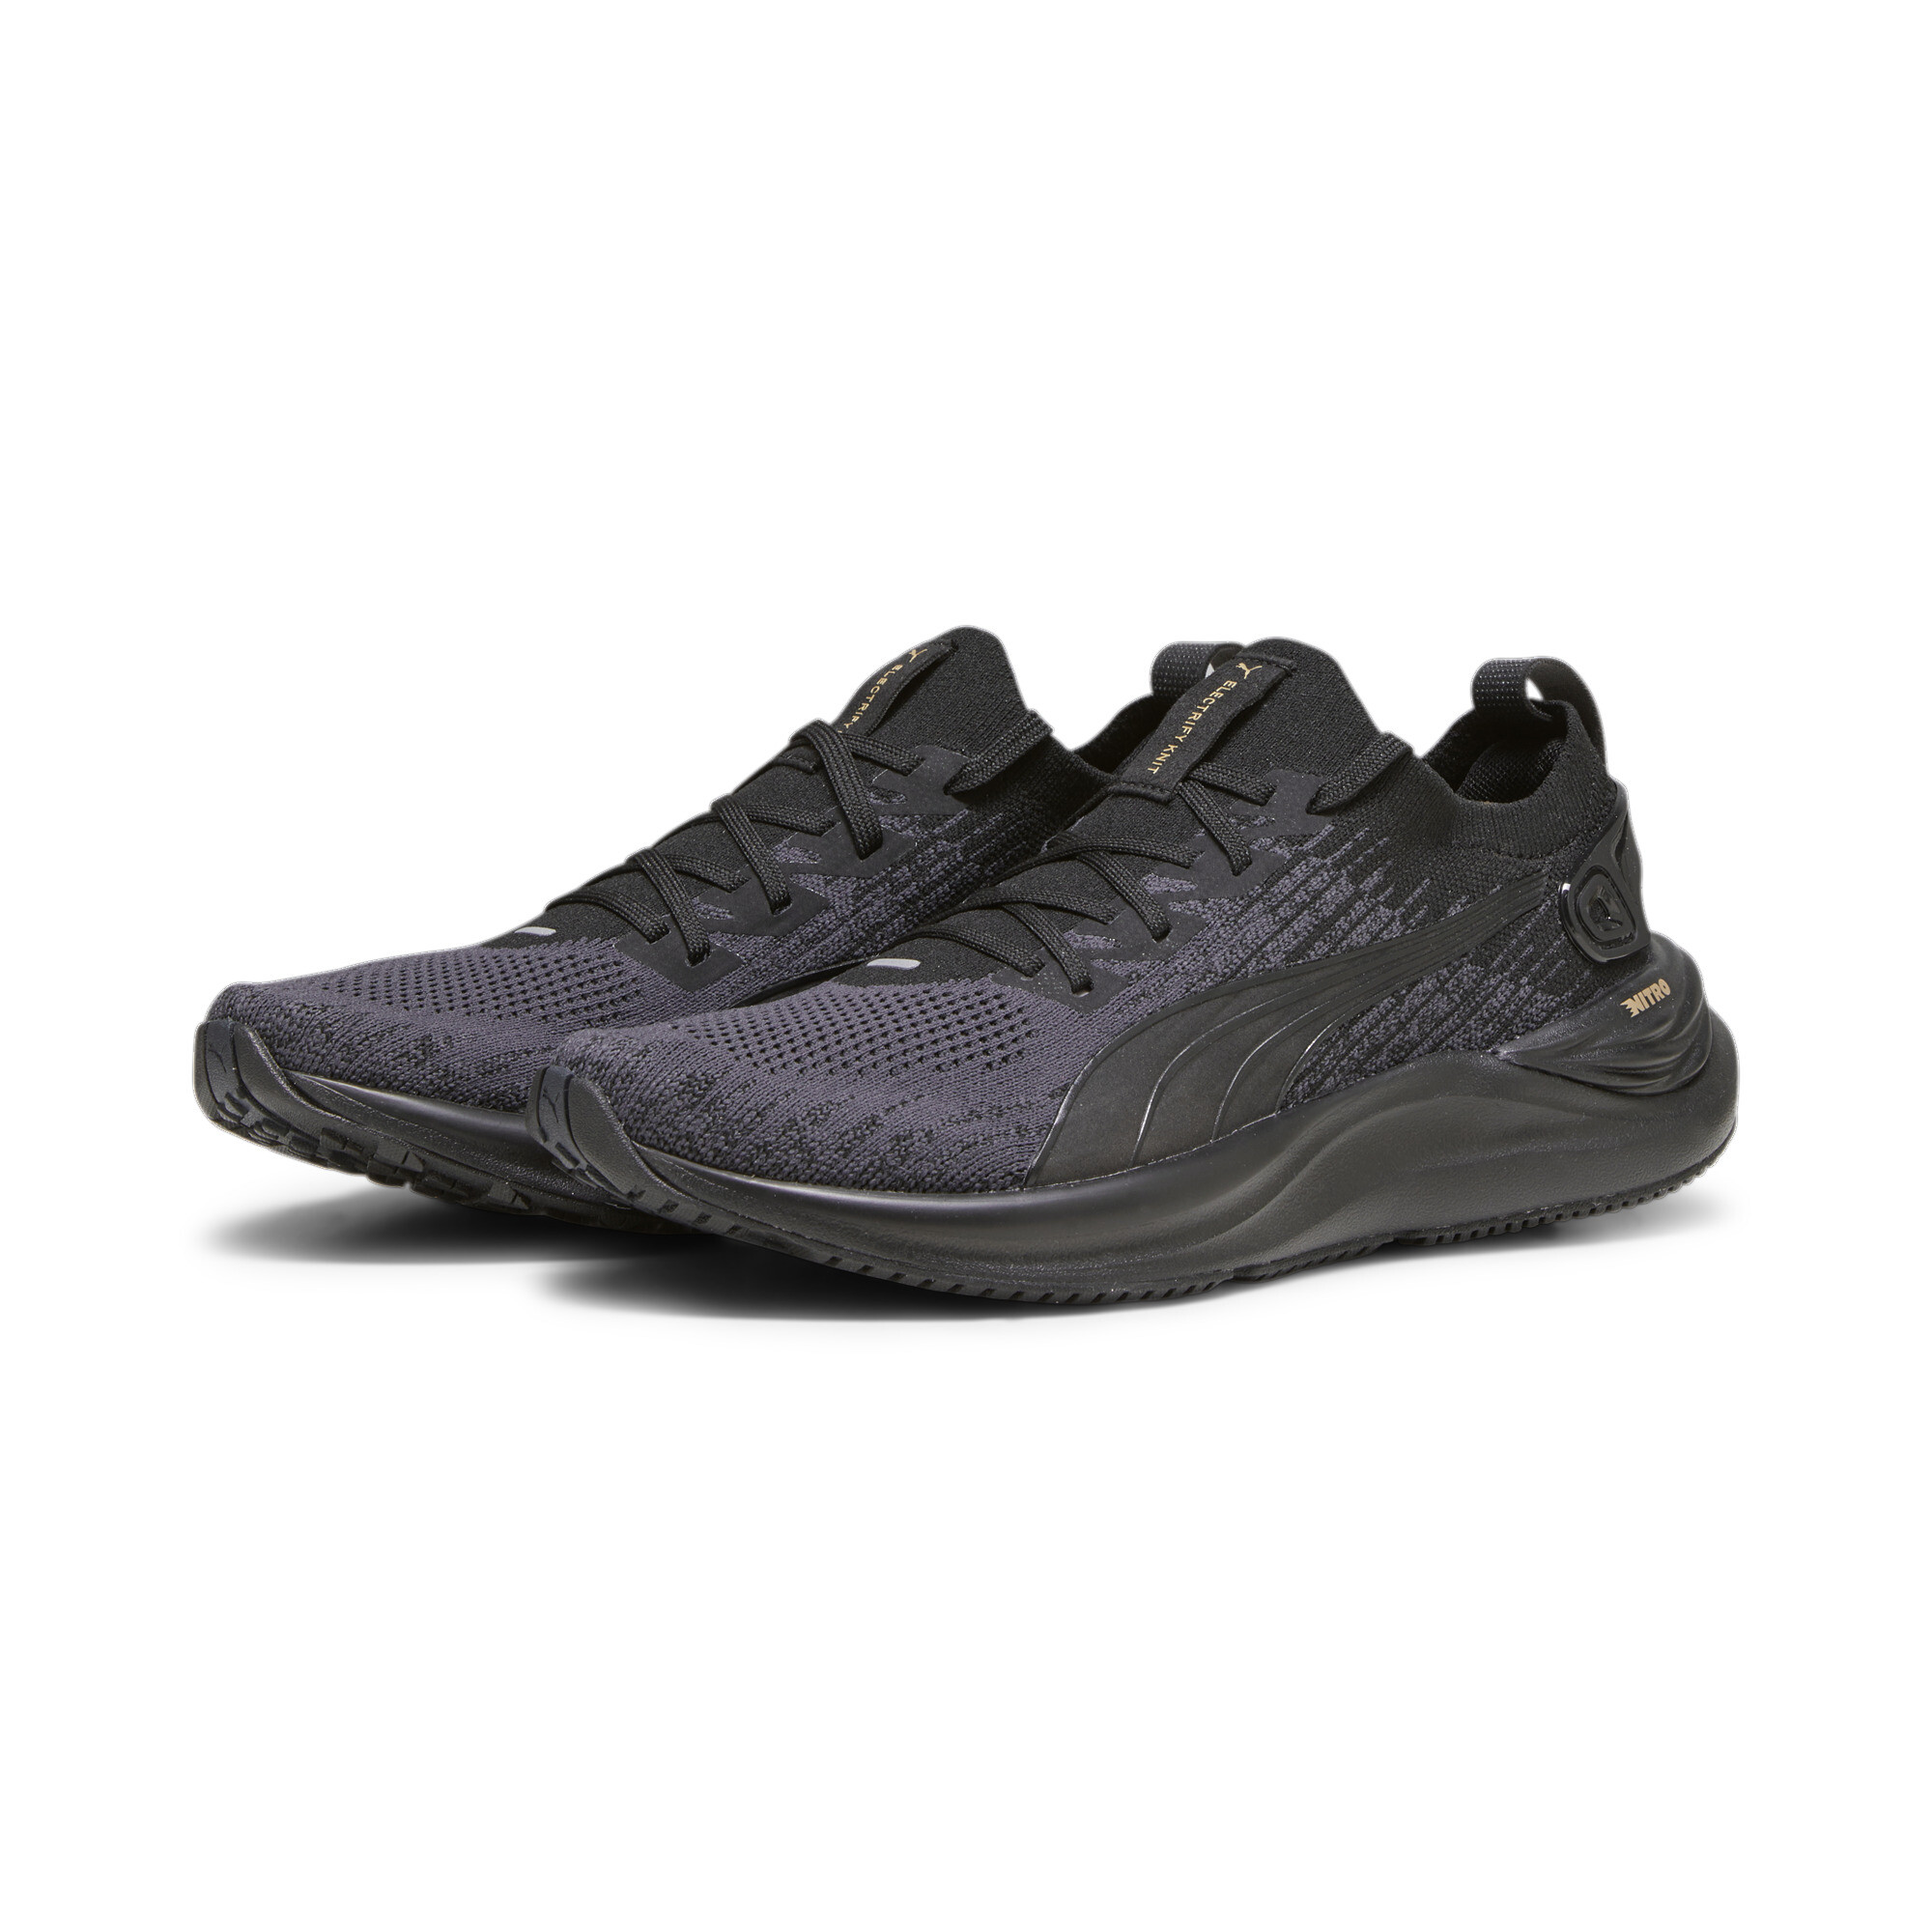 Women's PUMA Electrify NITRO 3 Knit Running Shoes In Black, Size EU 37